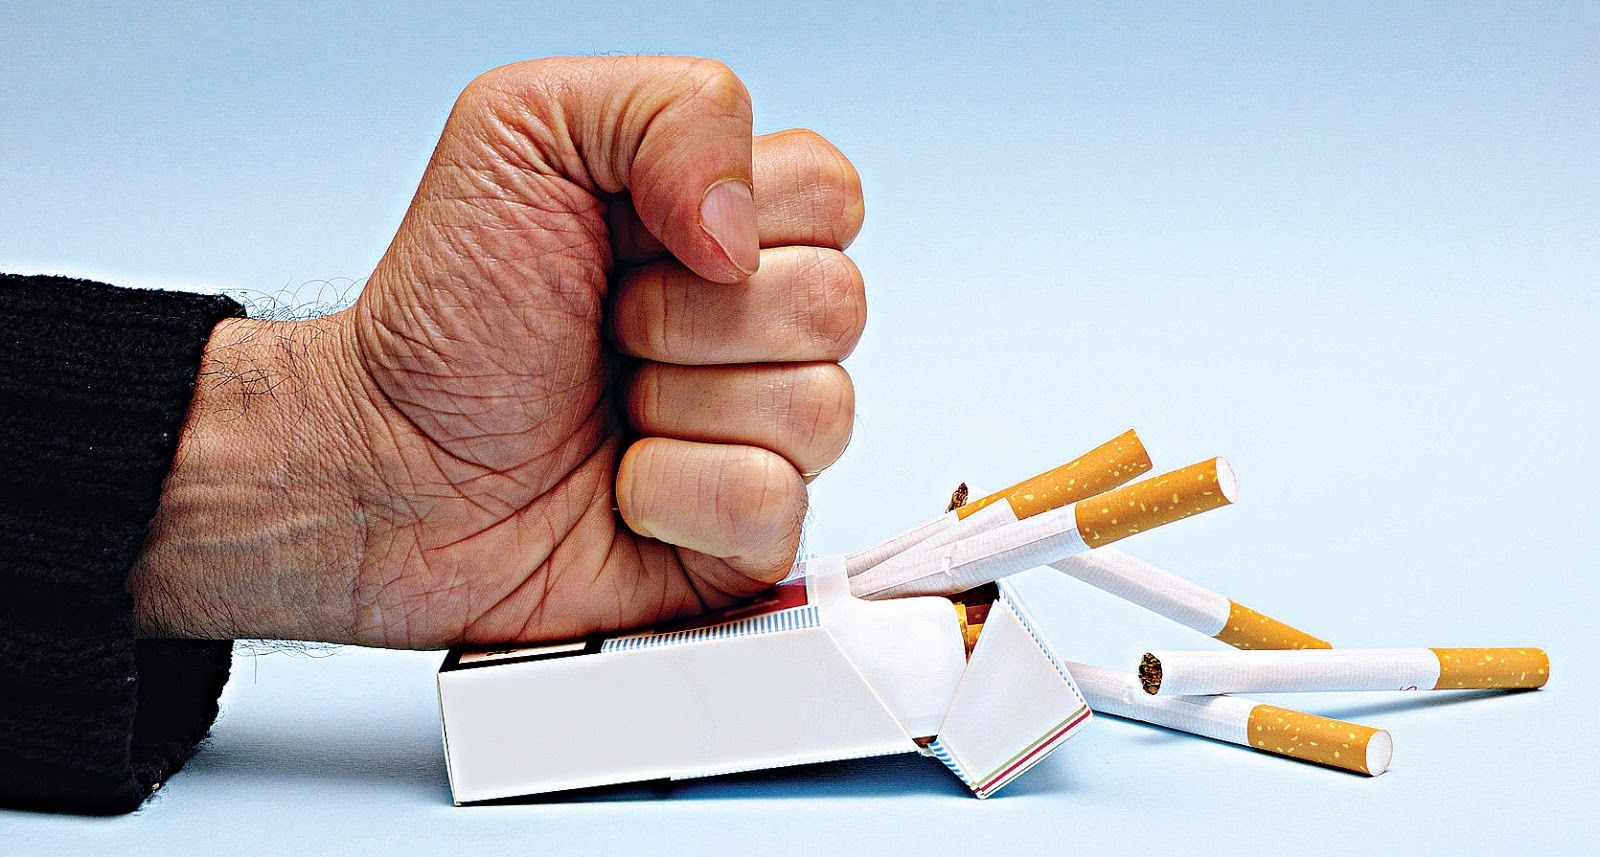 Але навіть підтримані ставки - значний крок до зменшення доступності сигарет, - вважає Андрій Скіпальський